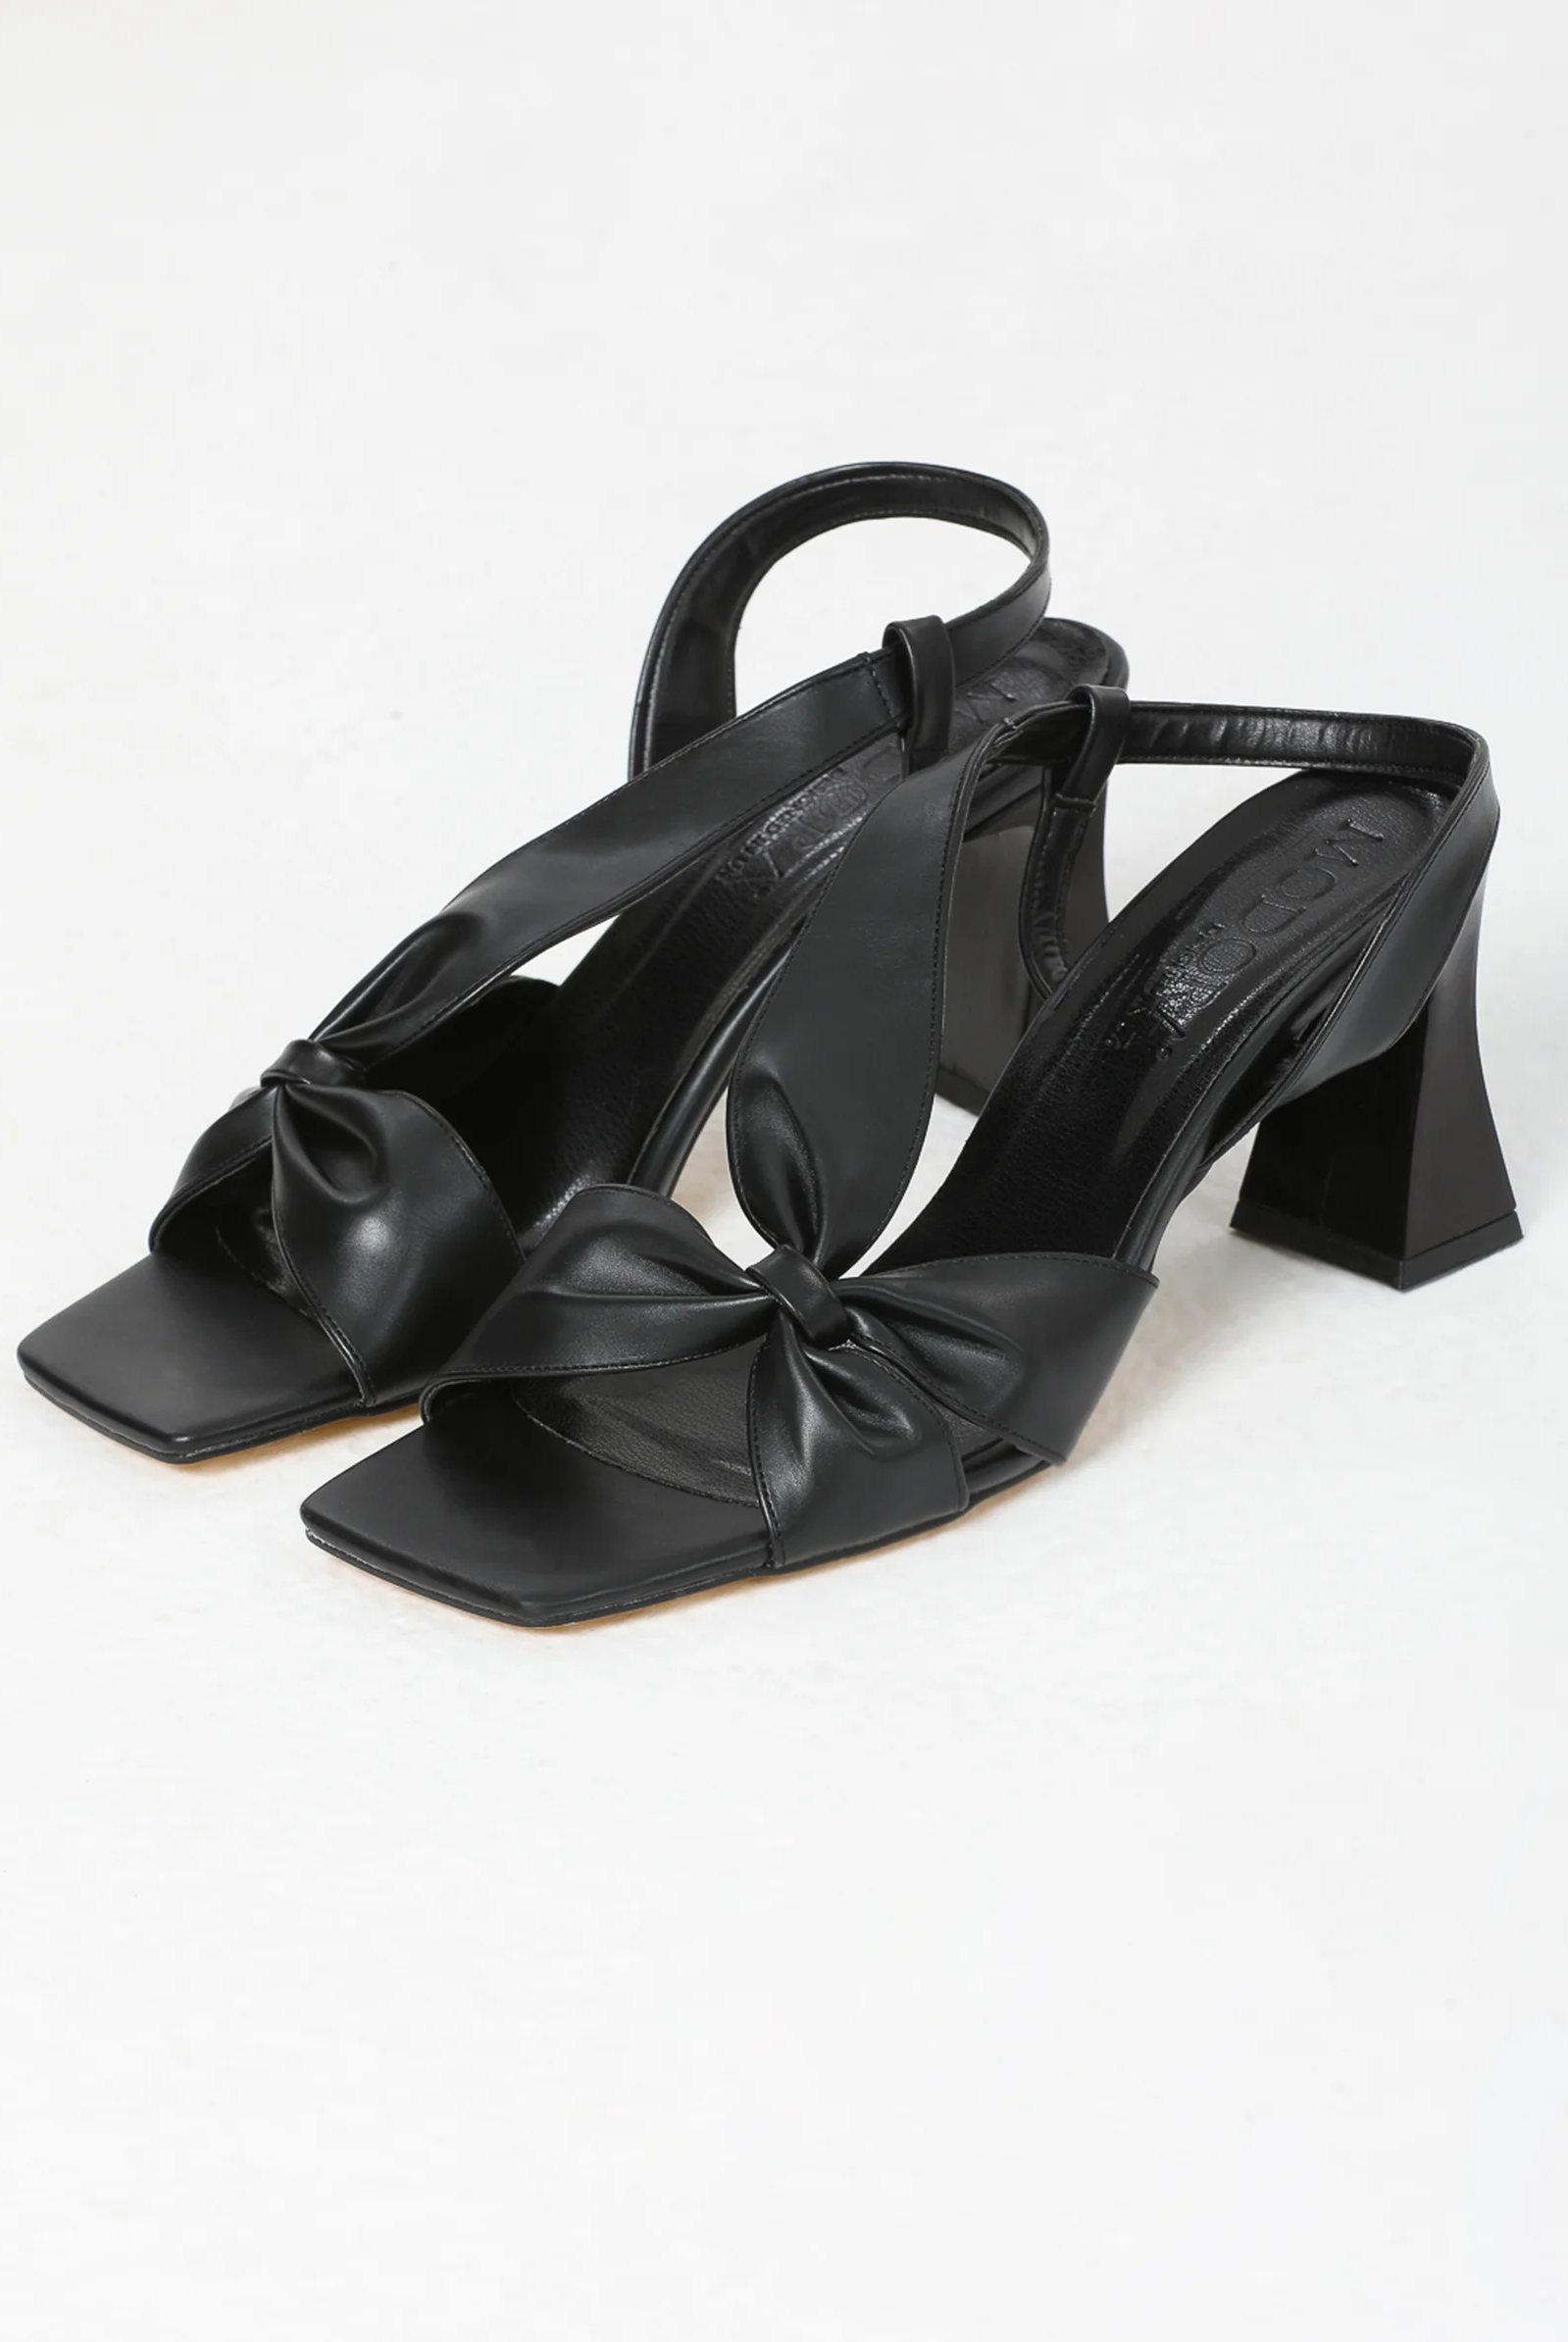 black block heels sandals